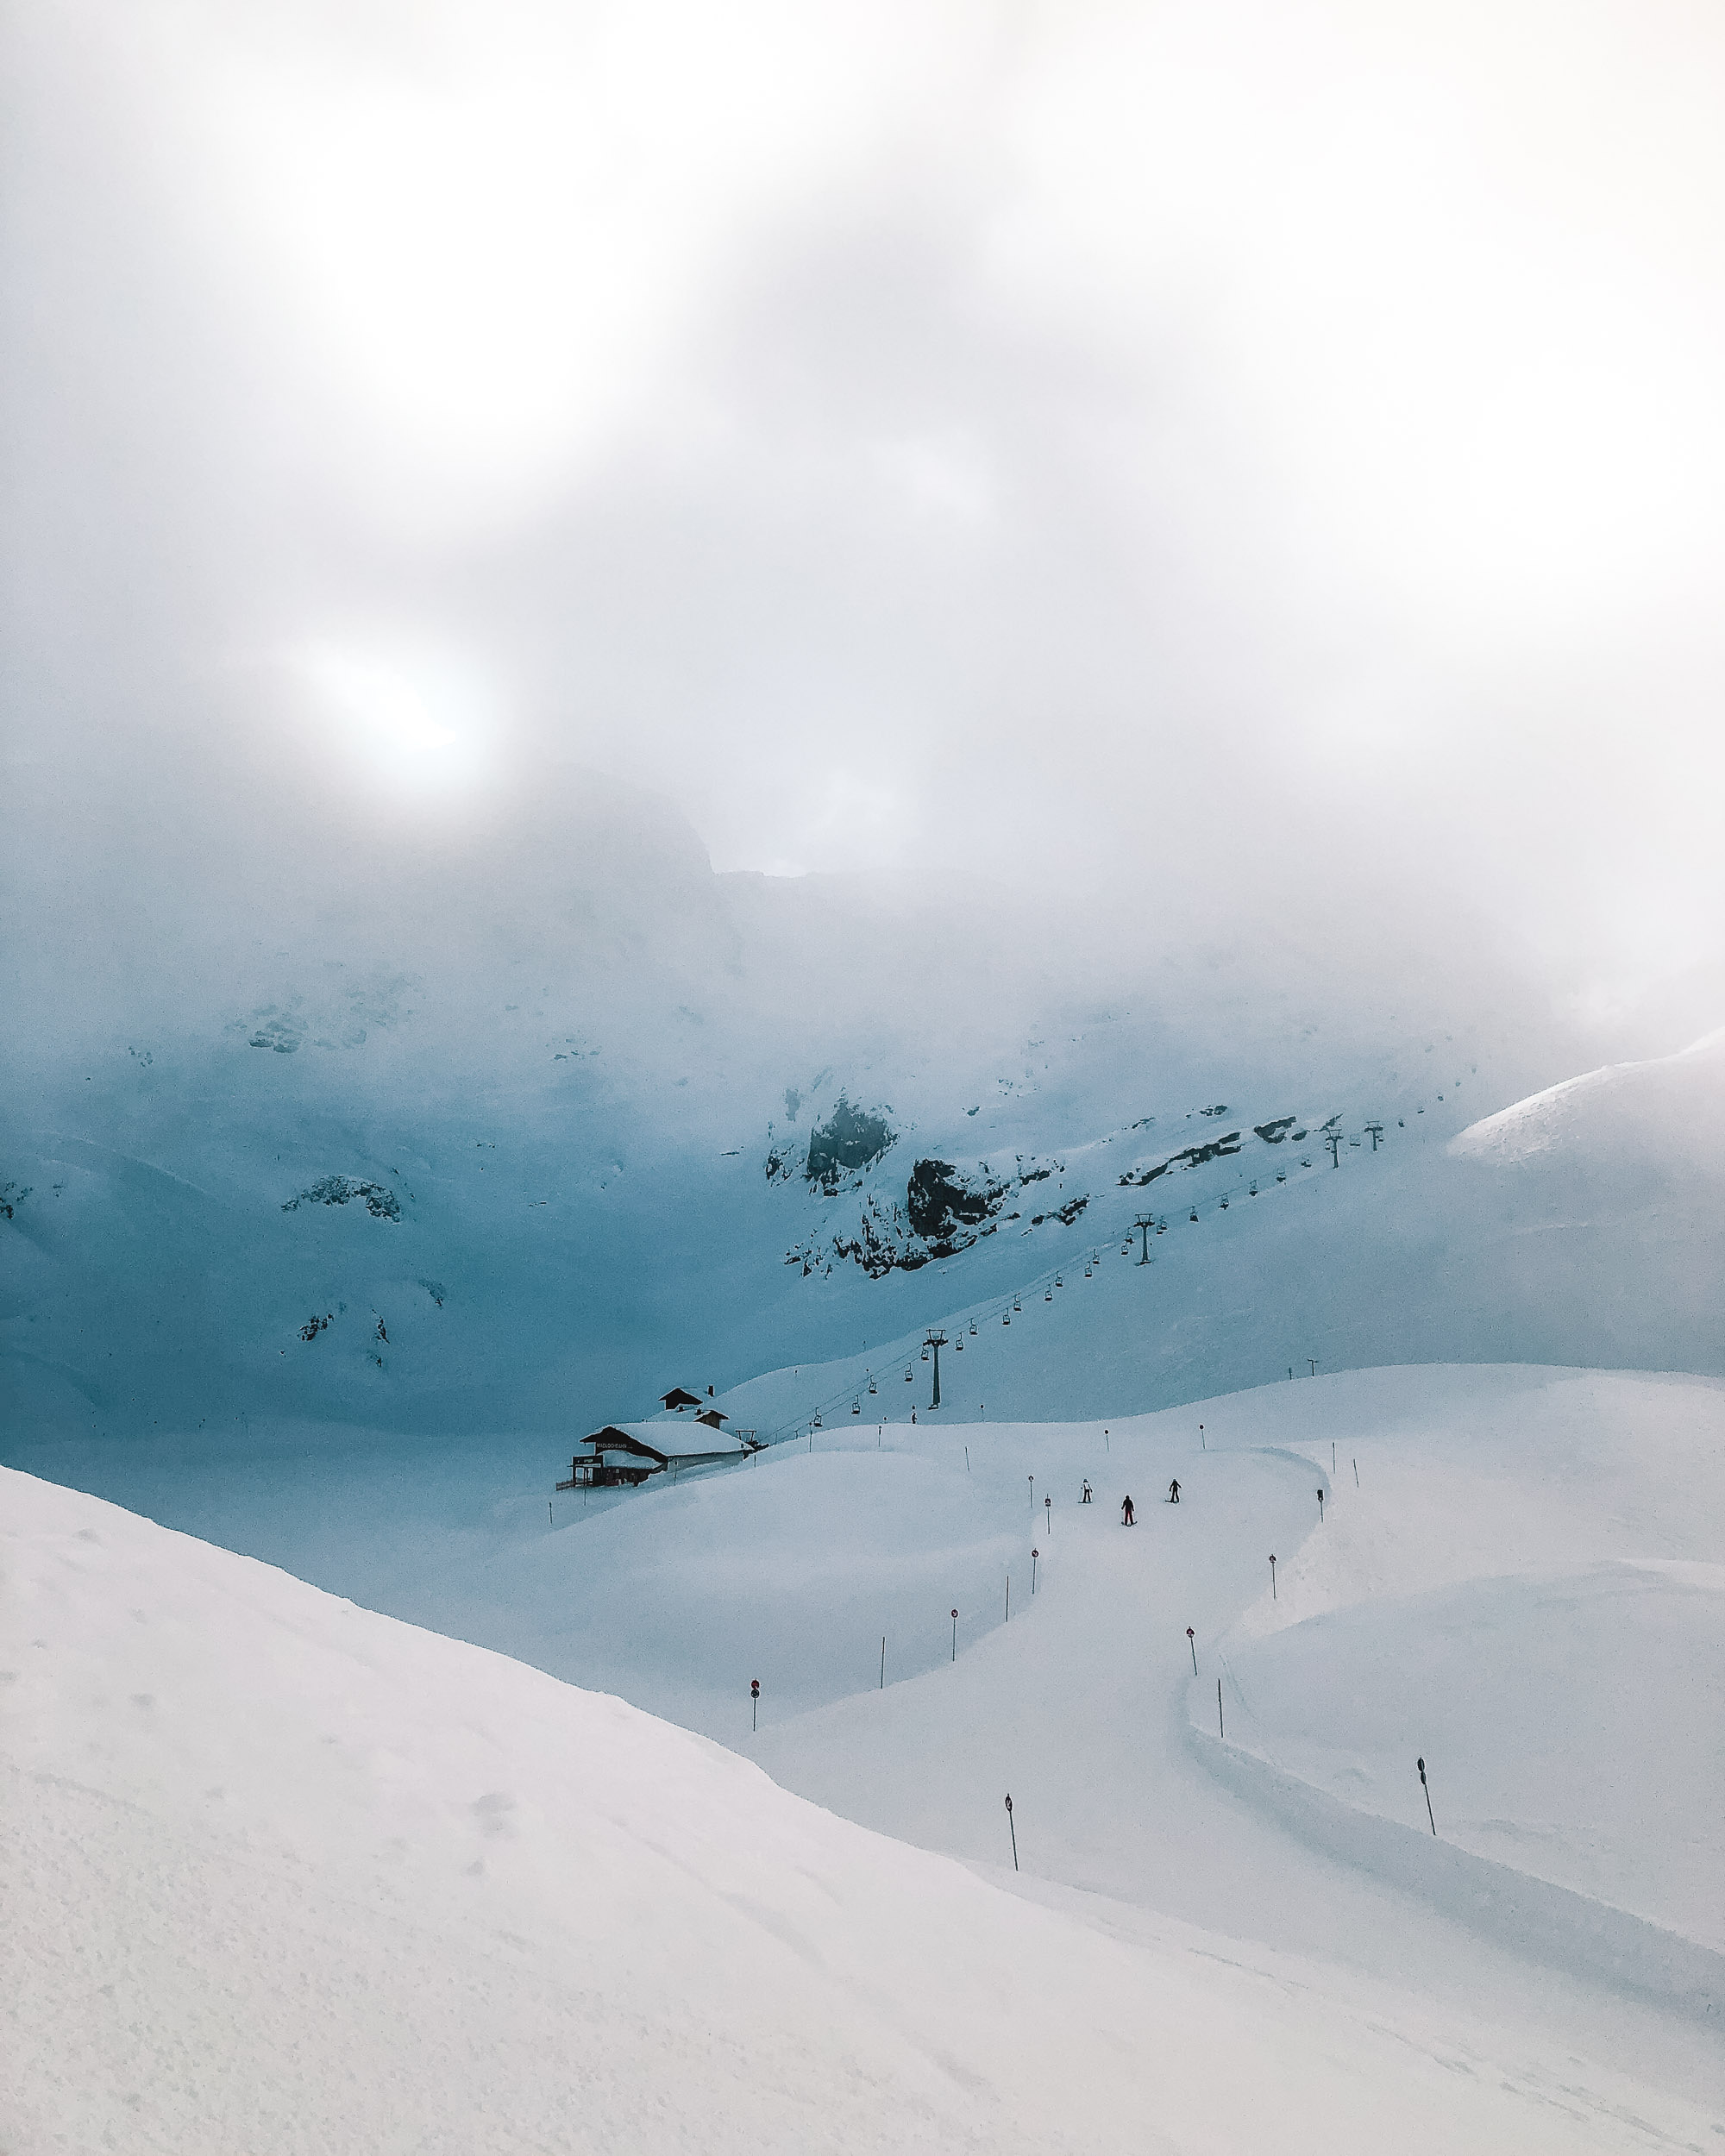 Ski slopes in Lech Austria in Europe